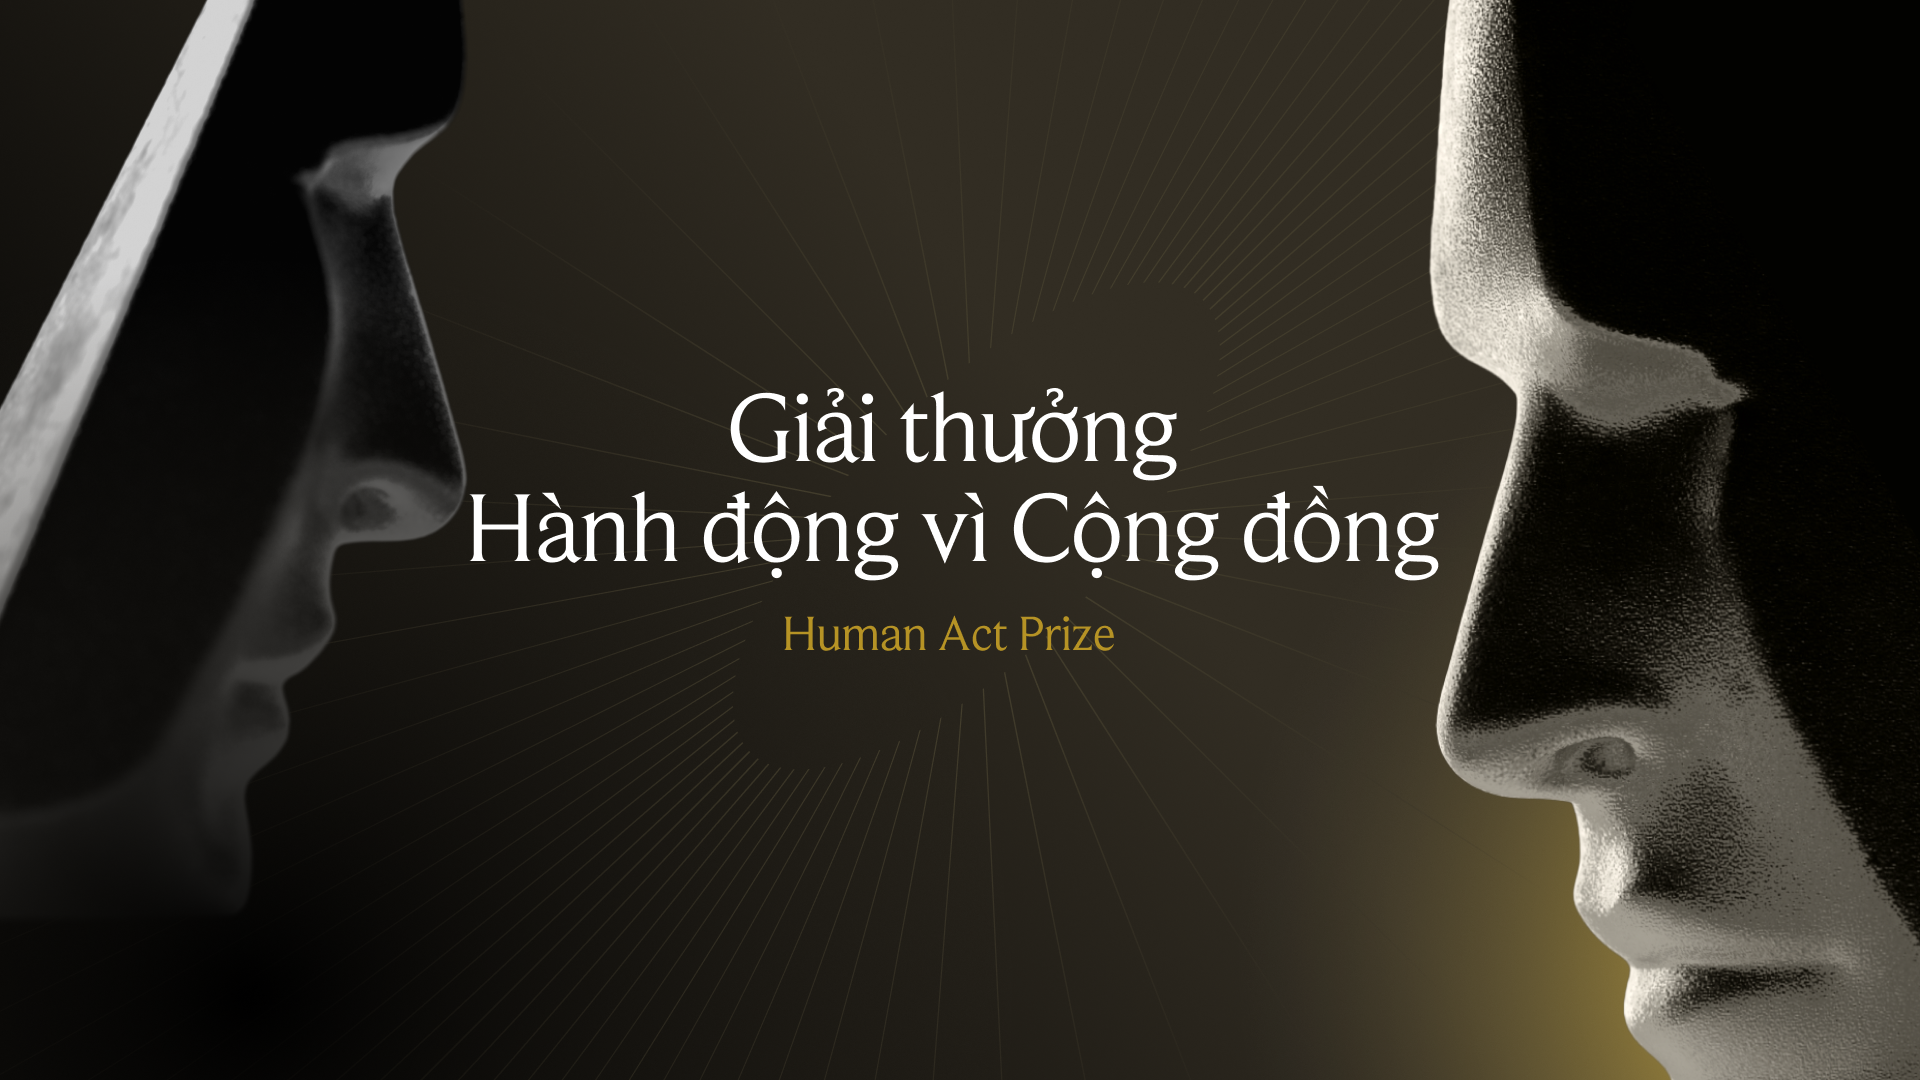 Human Act Prize 2023 - Giải thưởng Hành động vì Cộng đồng